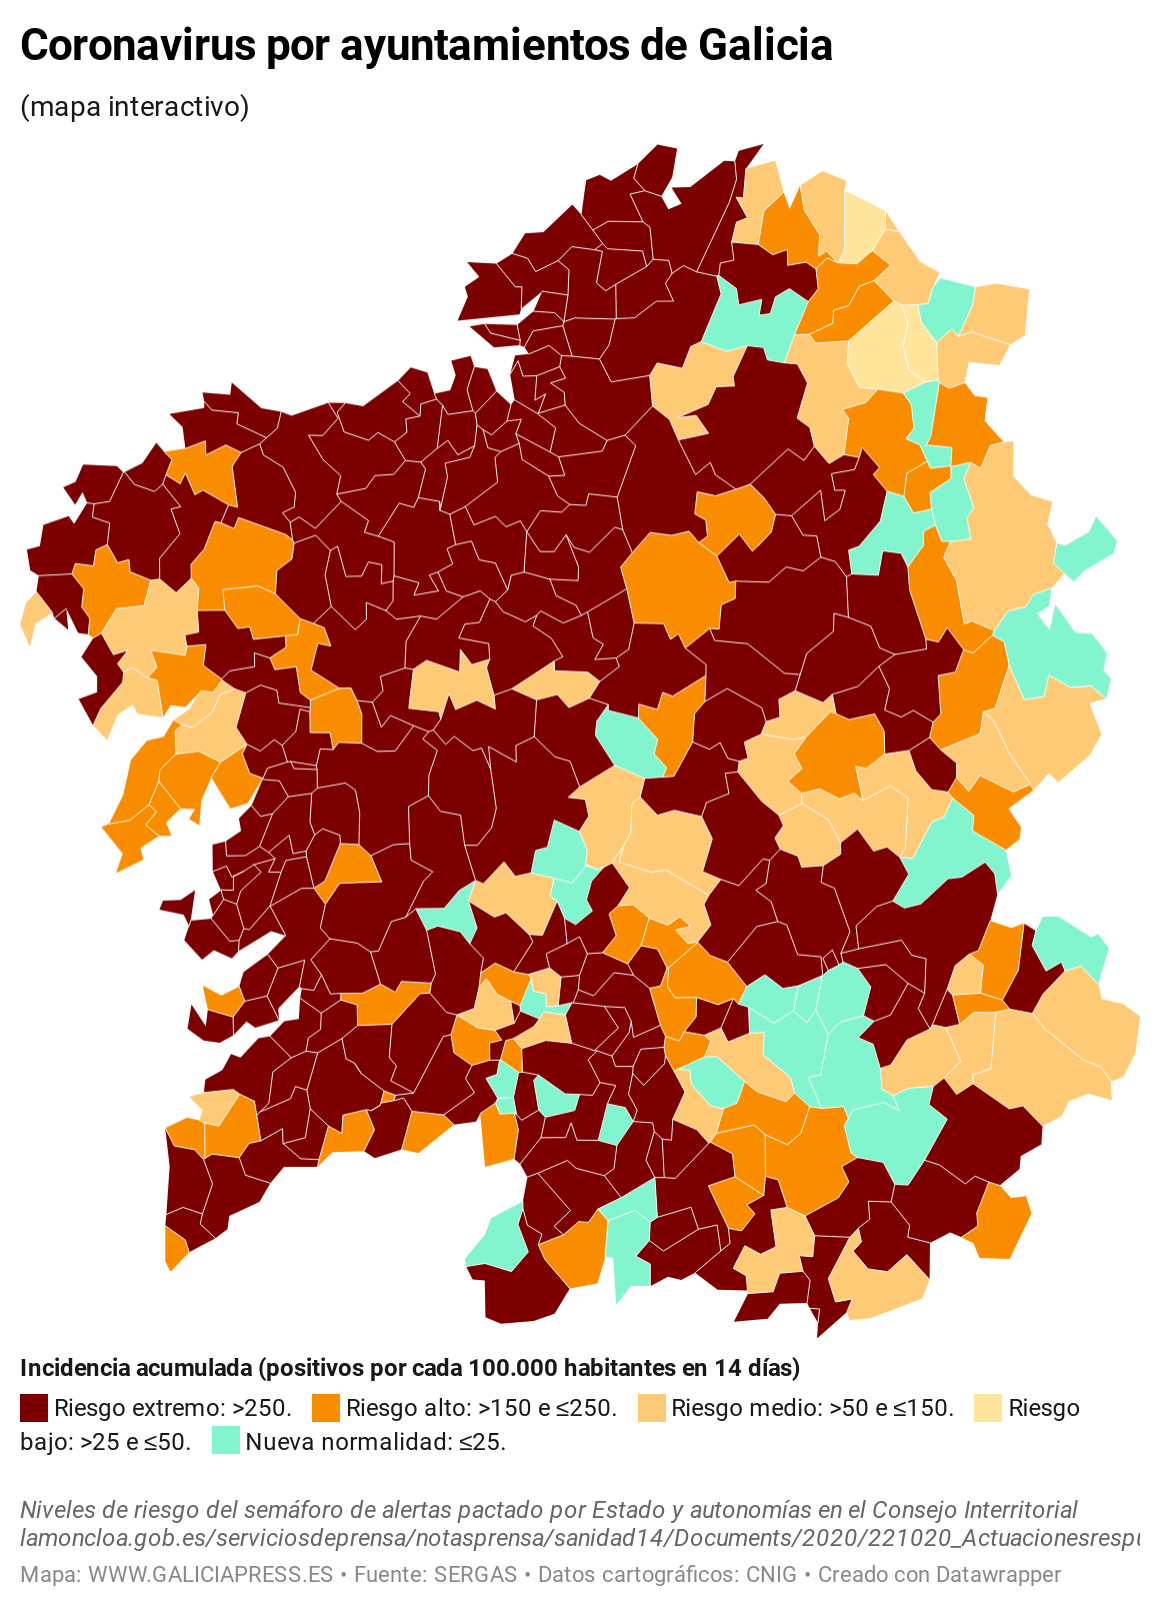 KV7EO coronavirus por concellos de galicia  (10)